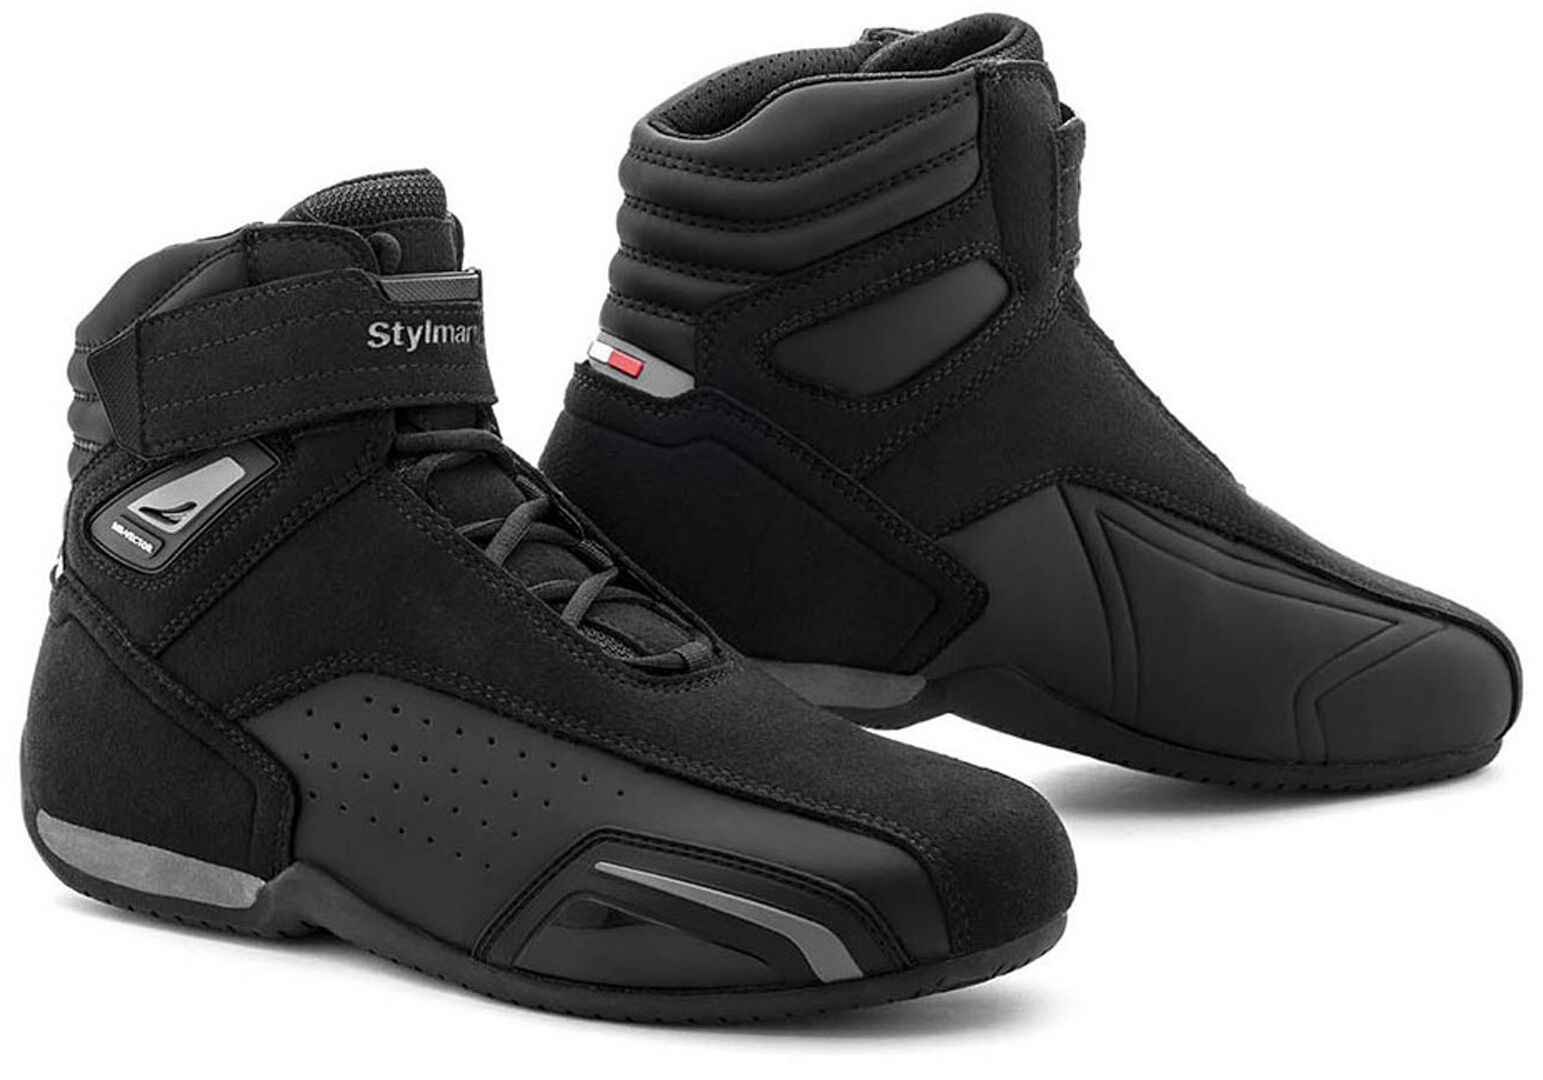 Stylmartin Vector Air Zapatos de moto - Negro (47)